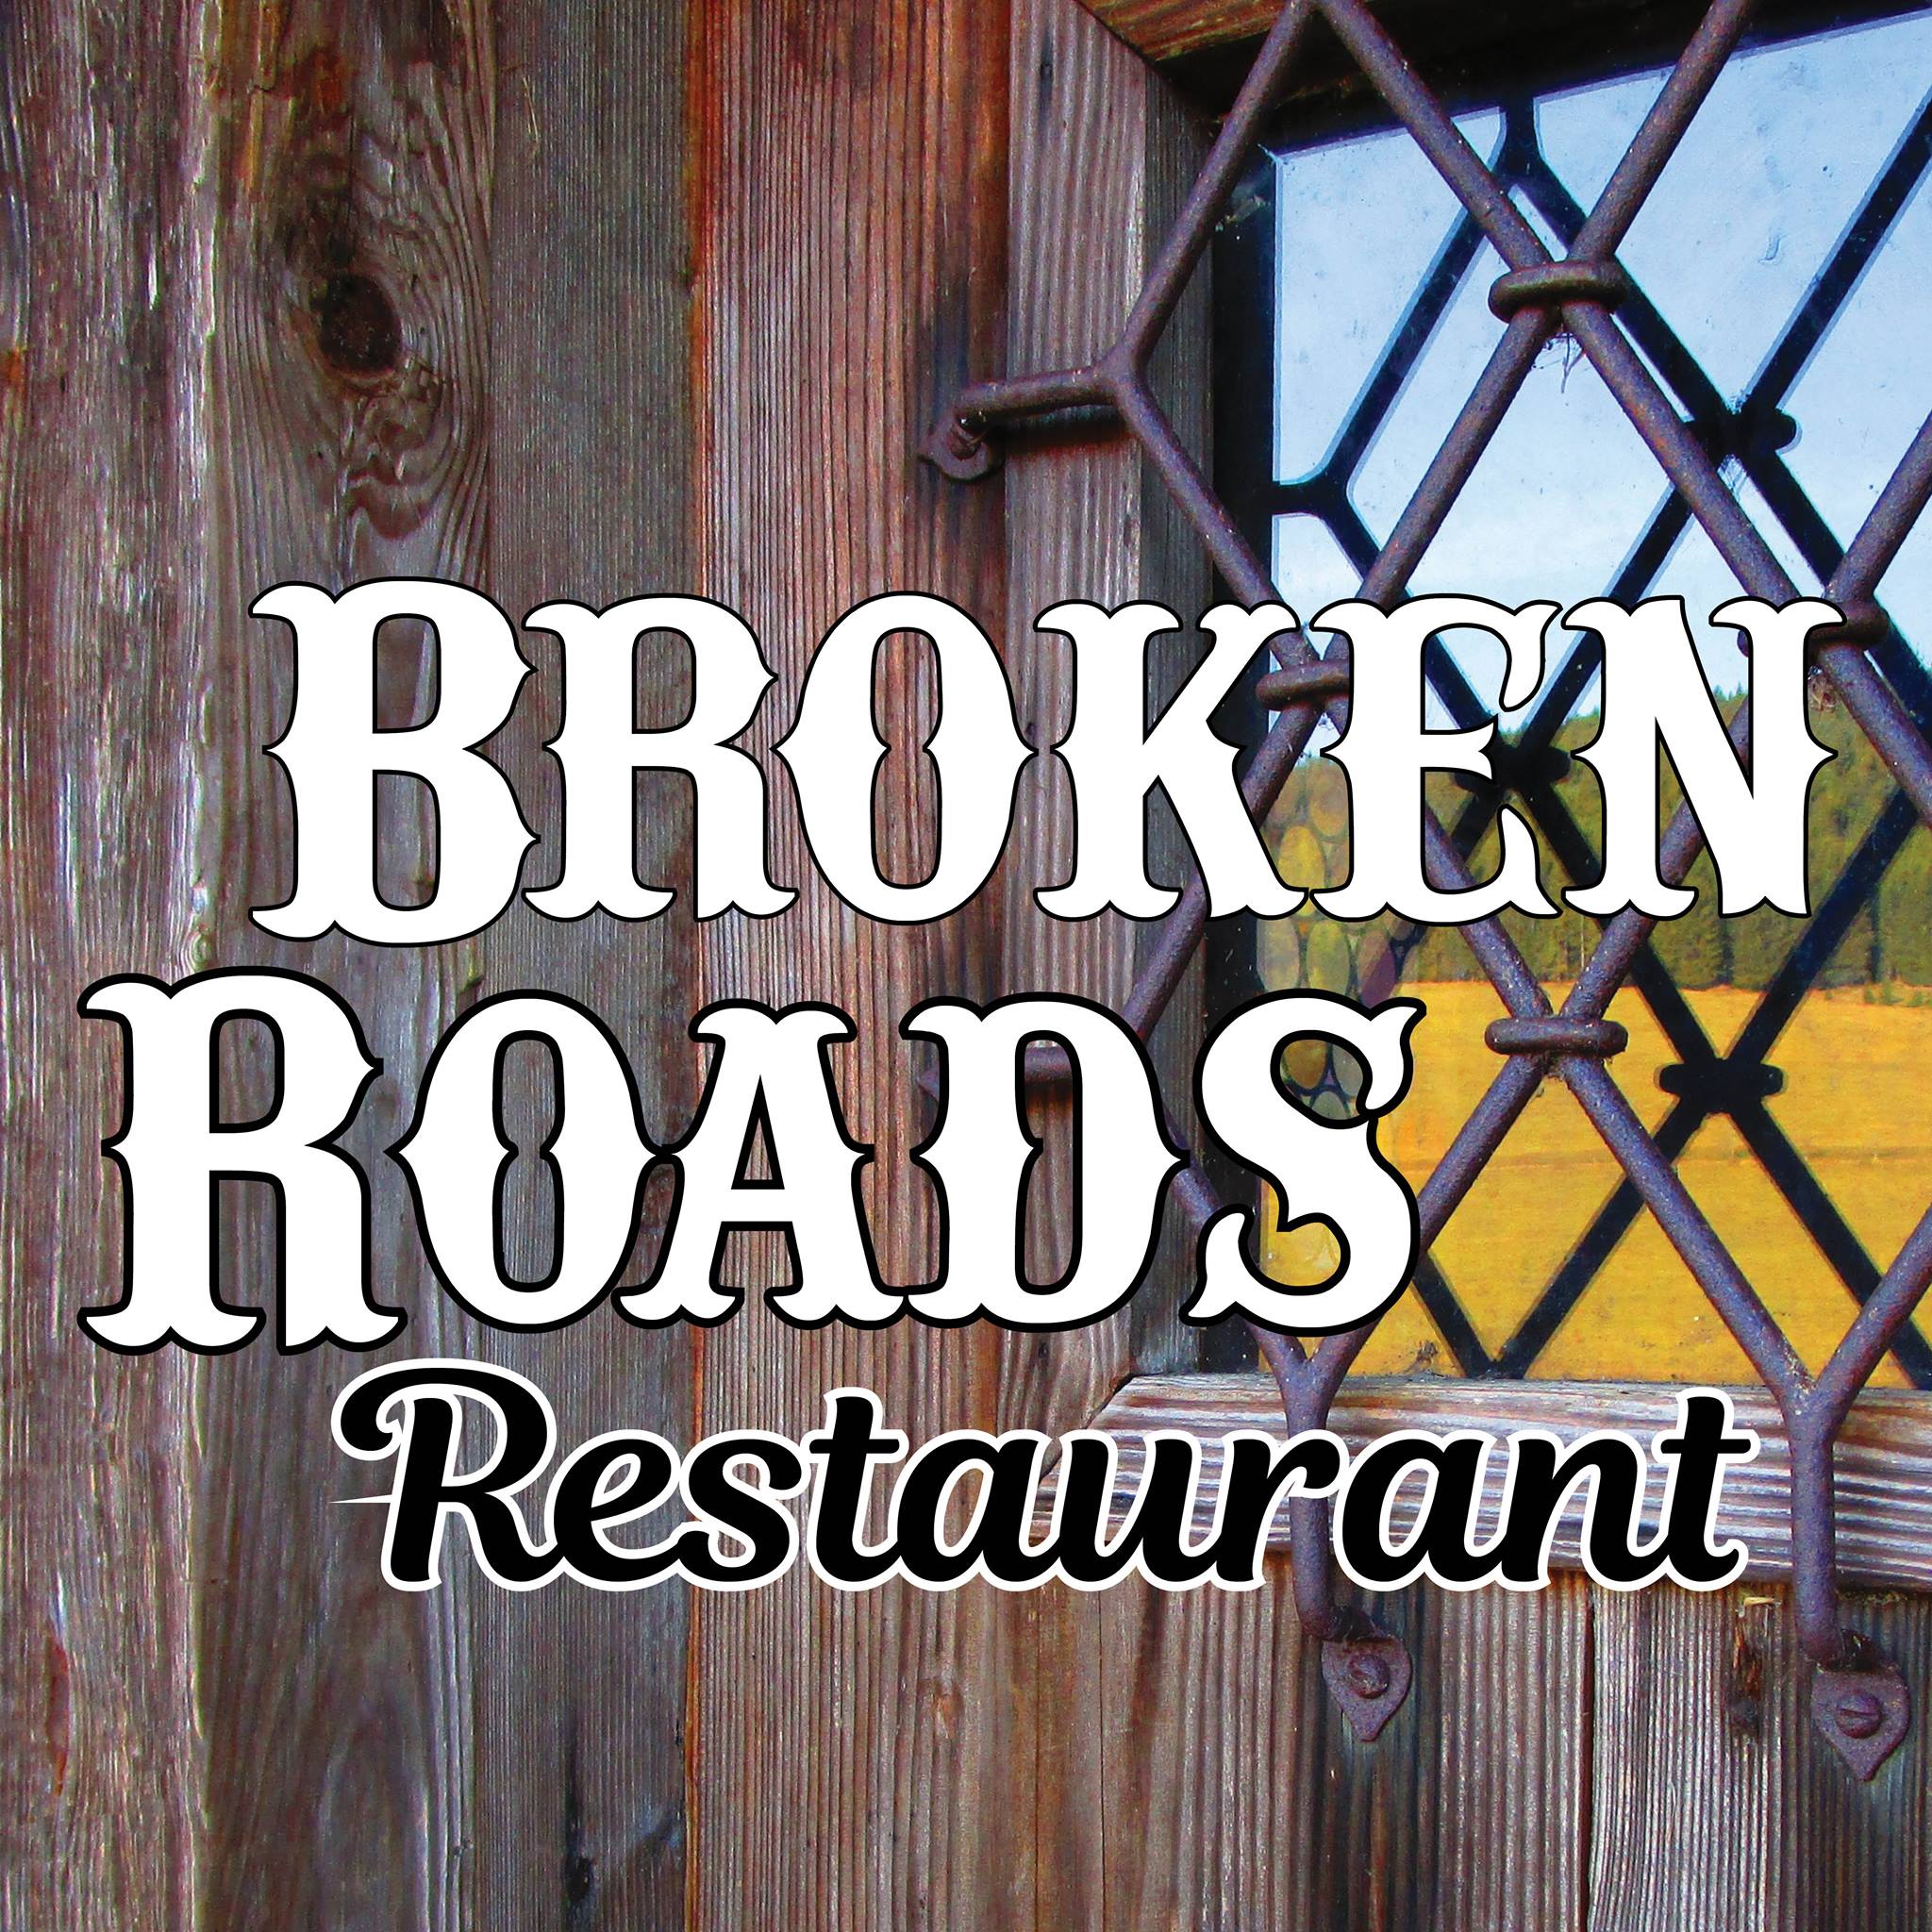 broken roads